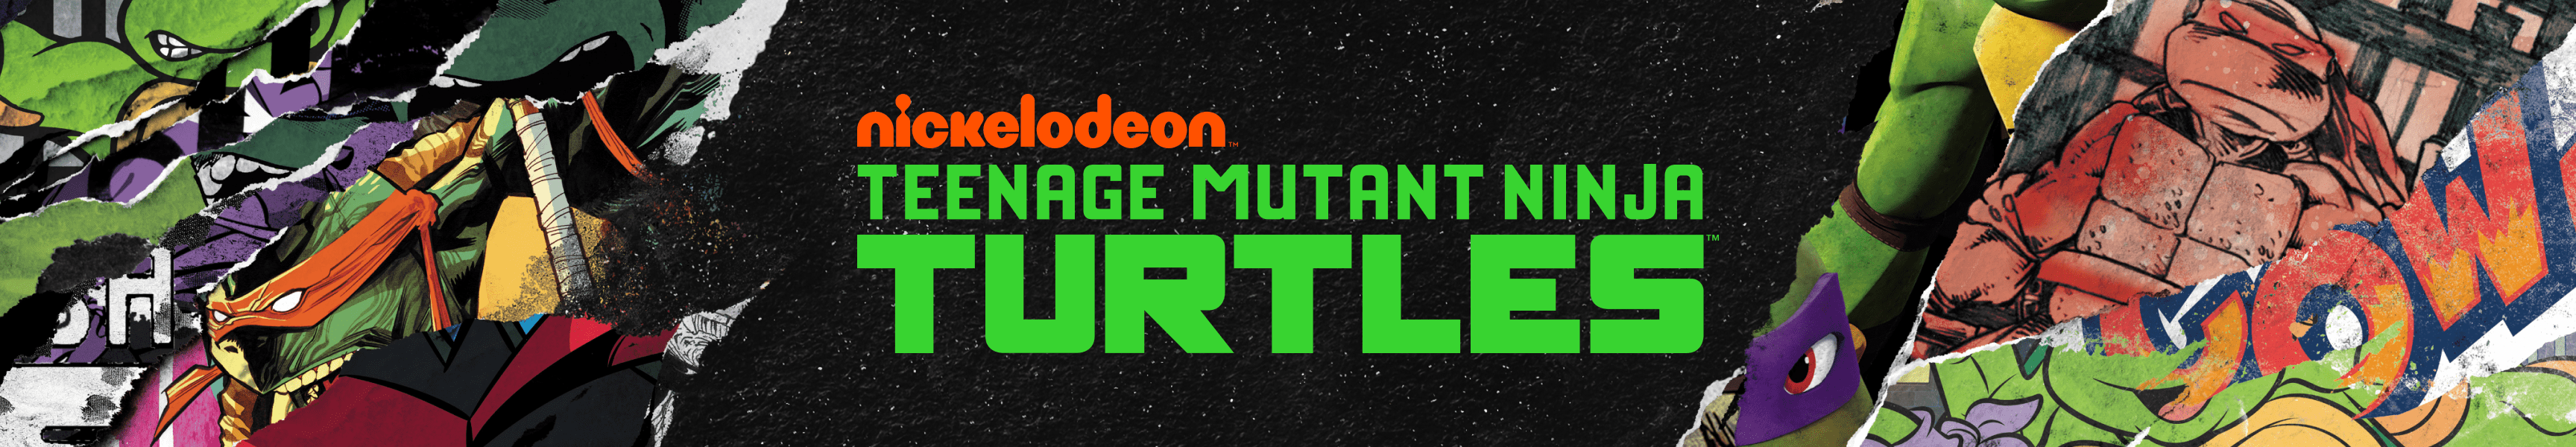 Teenage Mutant Ninja Turtles Mantas